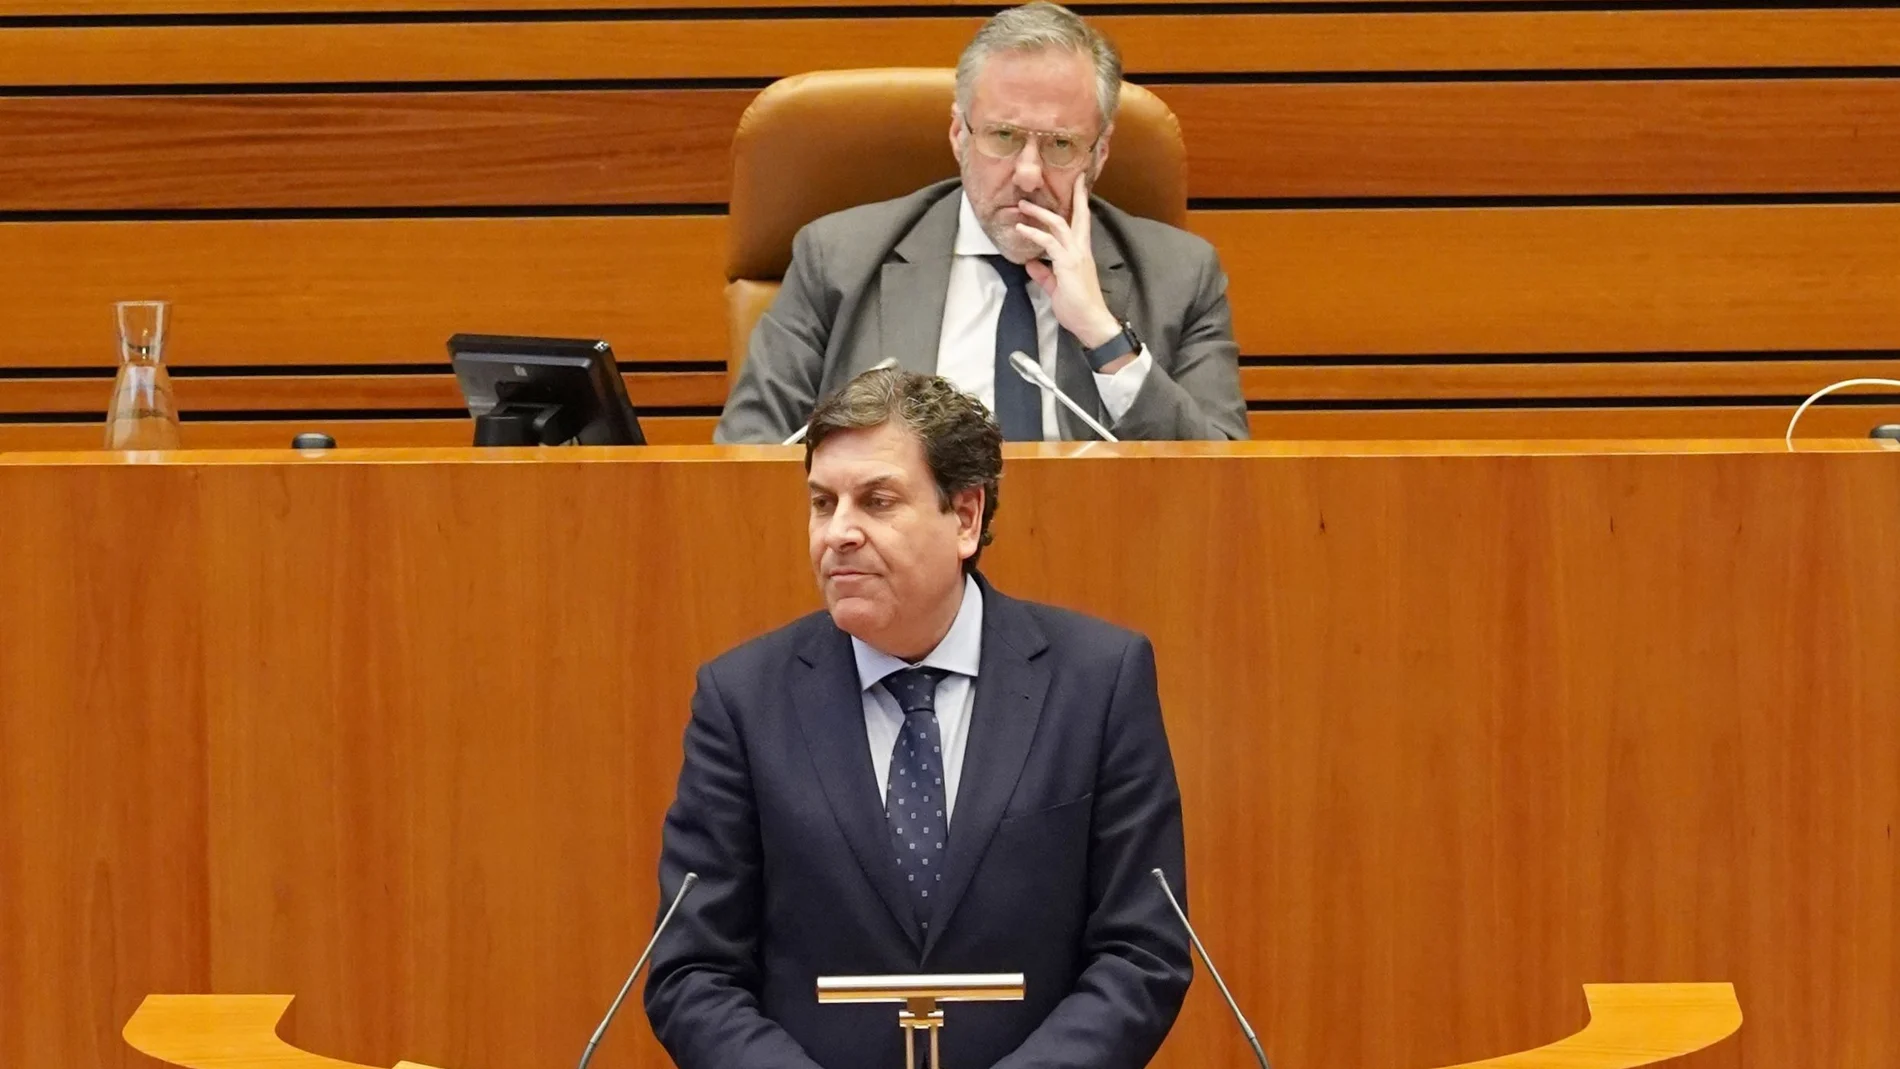 El consejero de Economía y Hacienda, Carlos Fernández Carriedo, defiende el techo de gasto en las Cortes, en presencia de Carlos Pollán